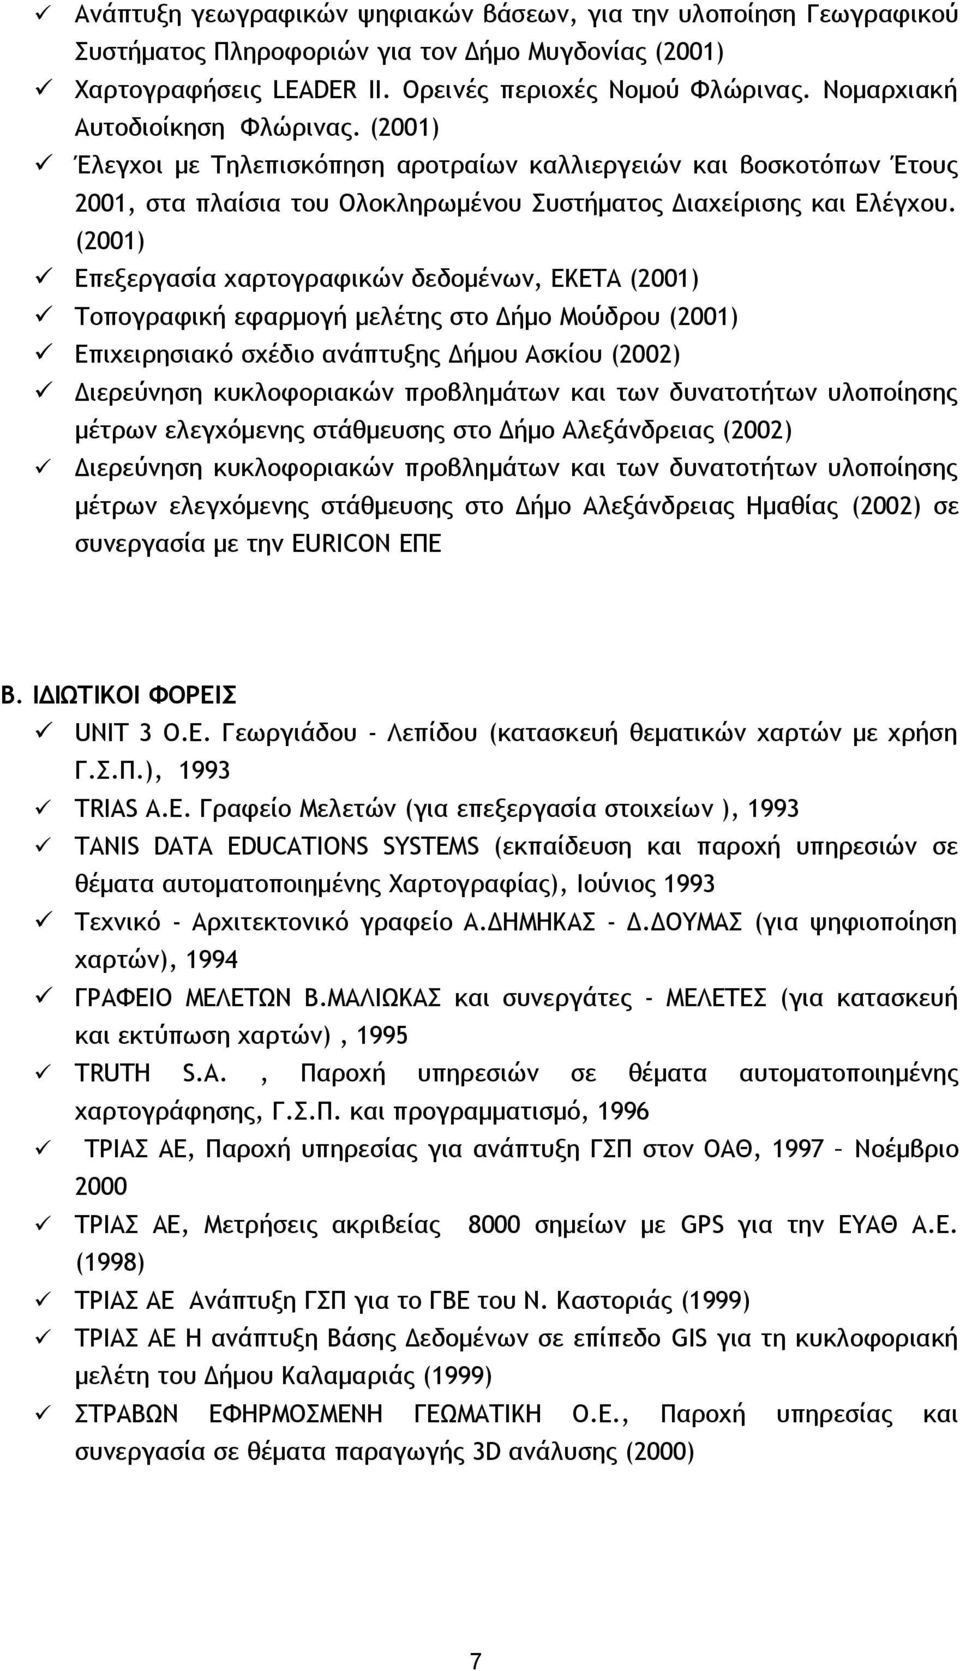 (2001) Επεξεργασία χαρτογραφικών δεδομένων, ΕΚΕΤΑ (2001) Τοπογραφική εφαρμογή μελέτης στο Δήμο Μούδρου (2001) Επιχειρησιακό σχέδιο ανάπτυξης Δήμου Ασκίου (2002) Διερεύνηση κυκλοφοριακών προβλημάτων